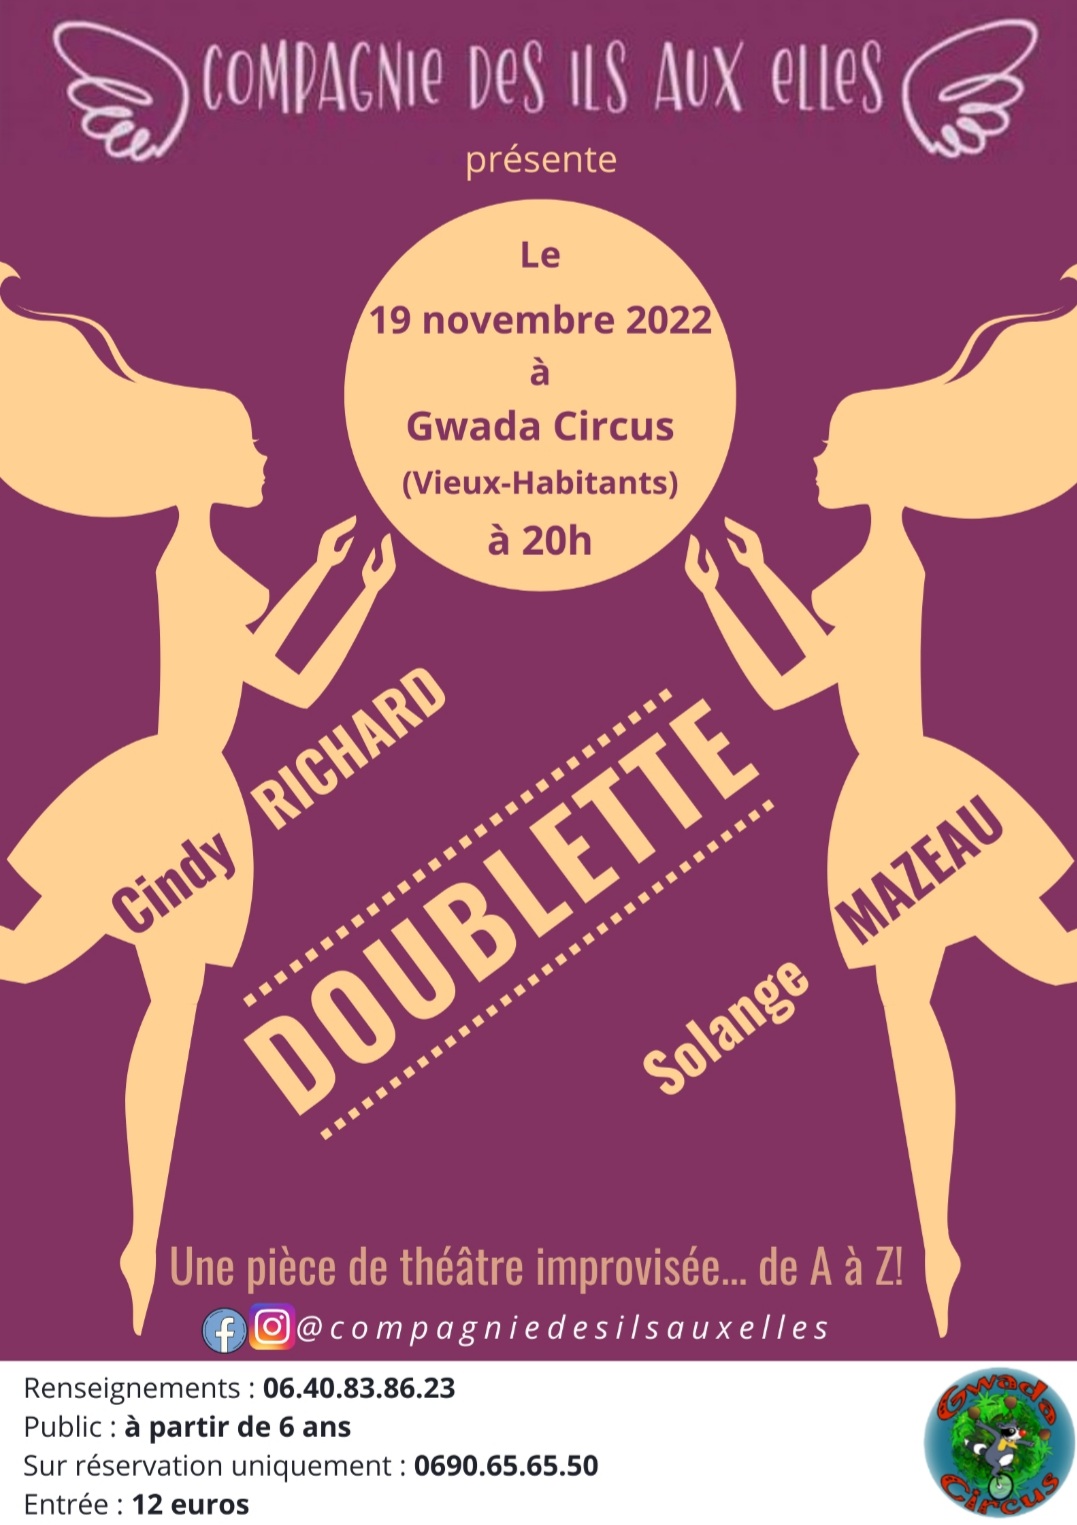 La compagnie des ils aux elles présente leur pièce de théâtre Doublette, une pièce de théâtre improvisée … de A à Z samedi 19 novembre 2022 à Gwada Circus à Vieux Habitants